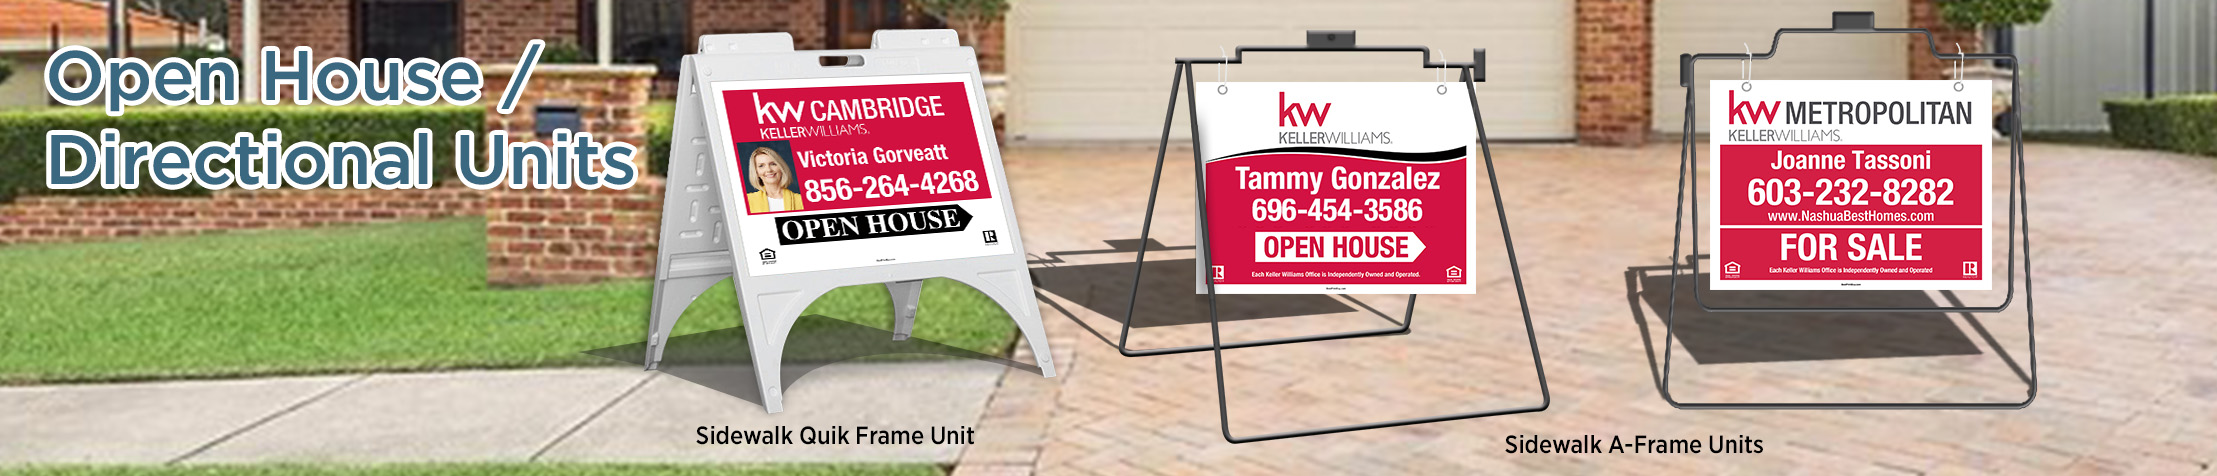 Keller Williams Signs -  Open House/Directional Units - KW approved vendor real estate Sidewalk A-Frame signs | BestPrintBuy.com